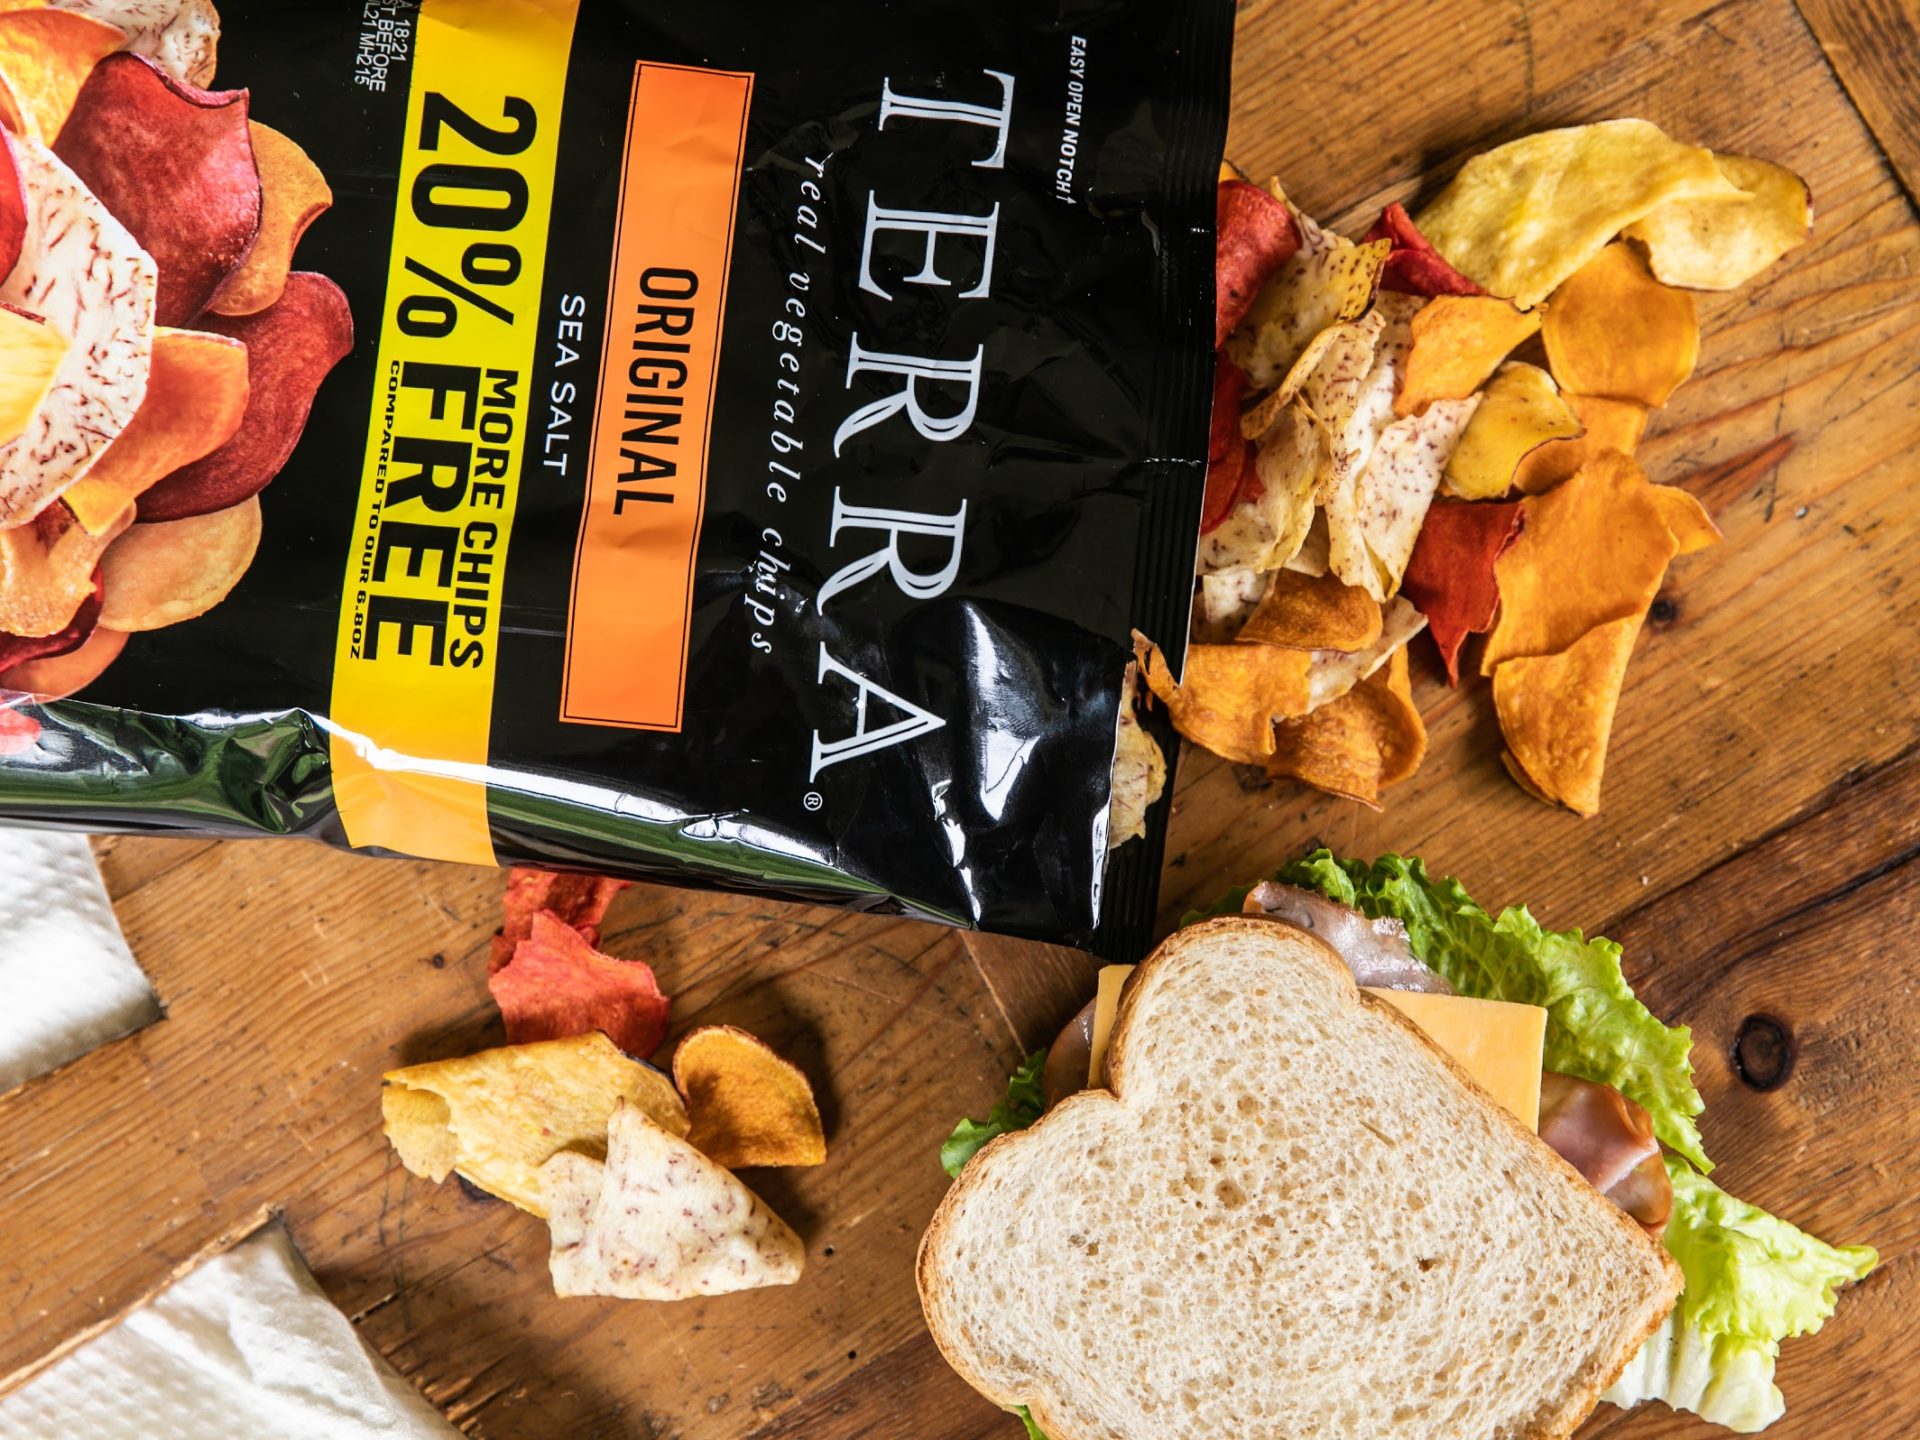 Terra Vegetable Chips Just $1.79 Per Bag At Kroger